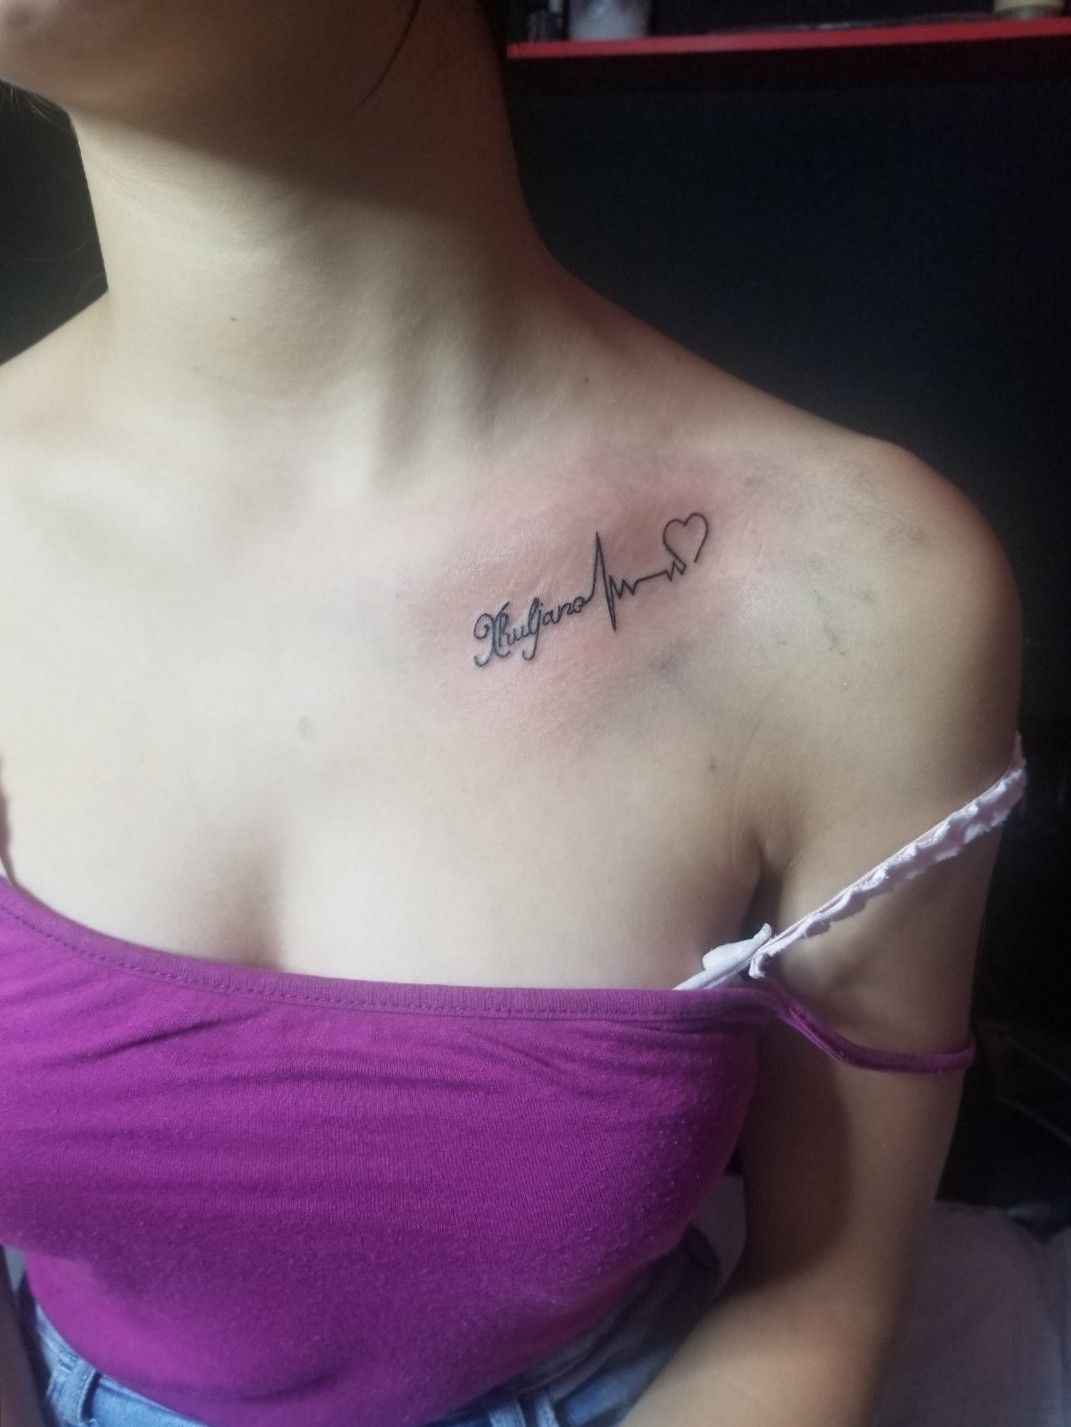 Ahmedabad Ink Tattoo - Heartbeat with name tattoo design  @ahmedabadinktattoo #ahmedabadinktattoo #heart #heartbeat #hearttattoo # heartbeattattoo #hearts #tattoo #tattoos #tattooideas #tattoomodel  #tattoostyle #tattoolove #name #nametattoo #nametag ...